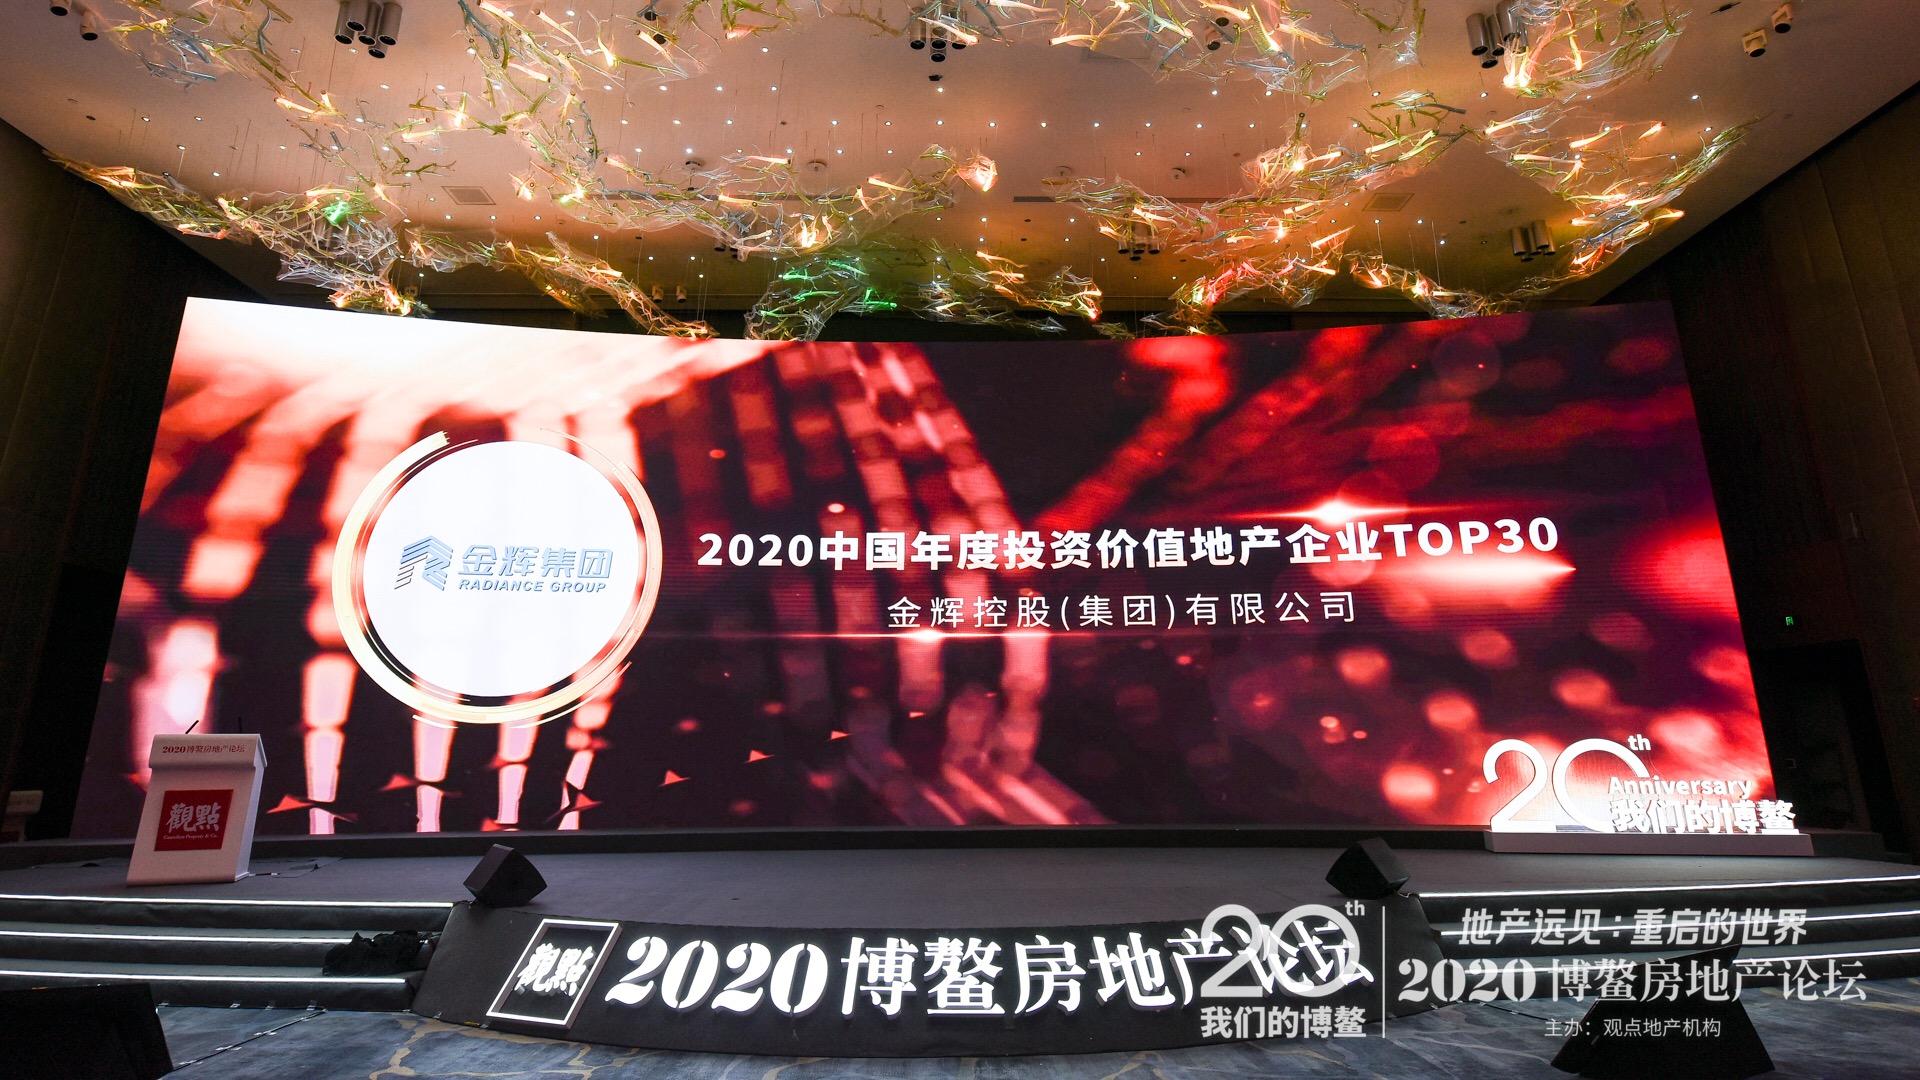 金辉集团荣膺”2020中国年度投资价值地产企业TOP30”-2.jpg